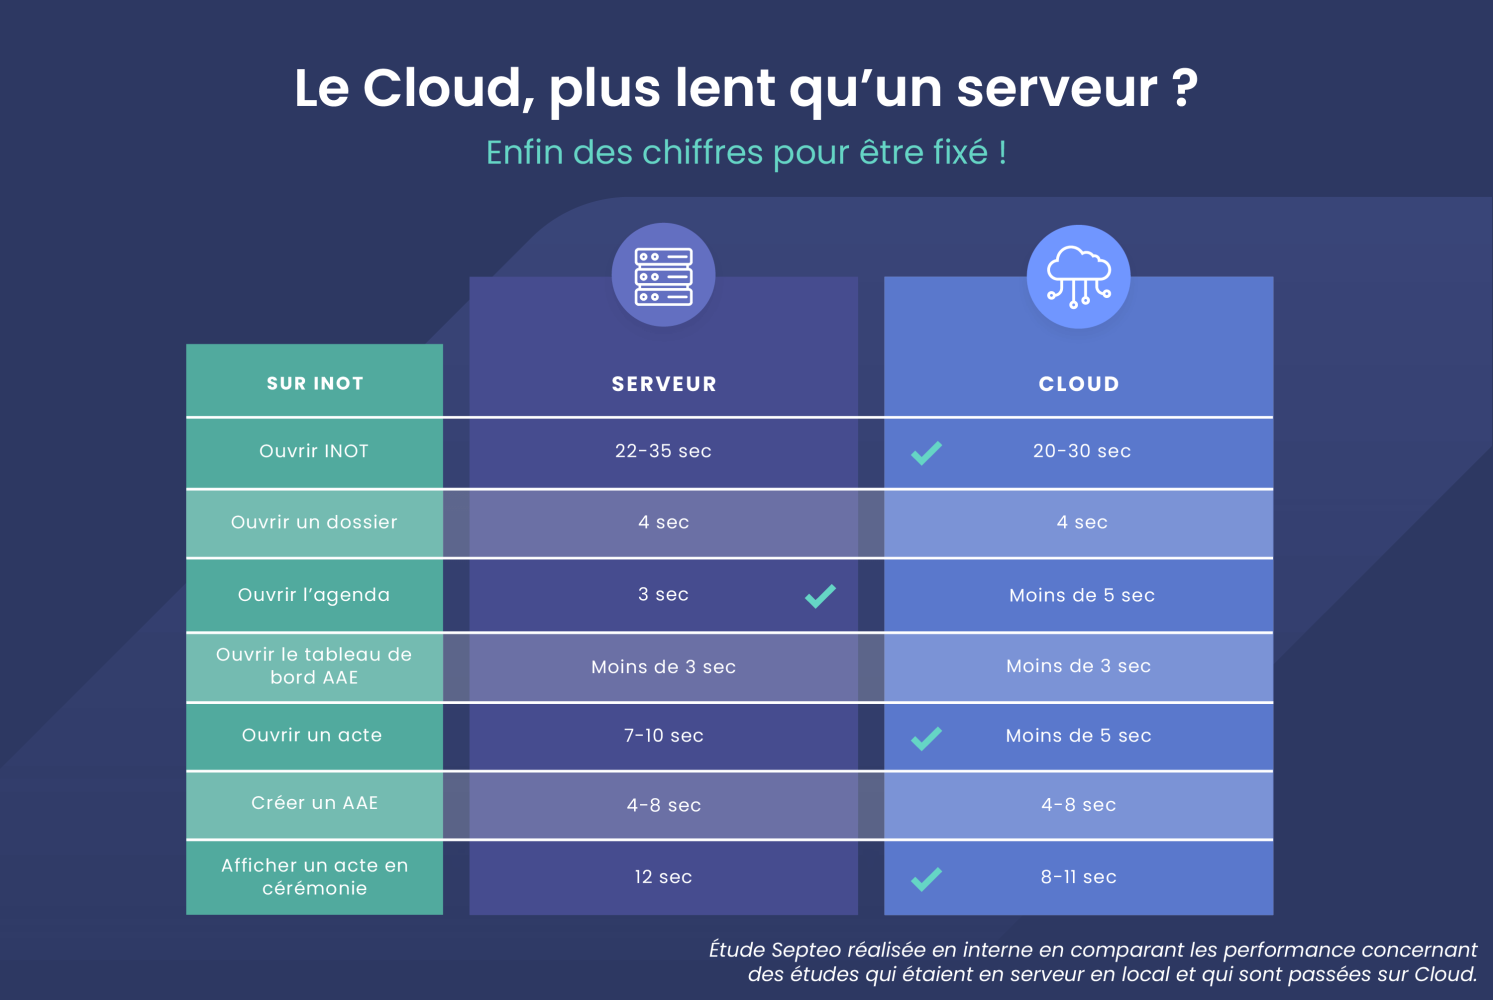 Le Cloud est-il plus lent que le serveur ?